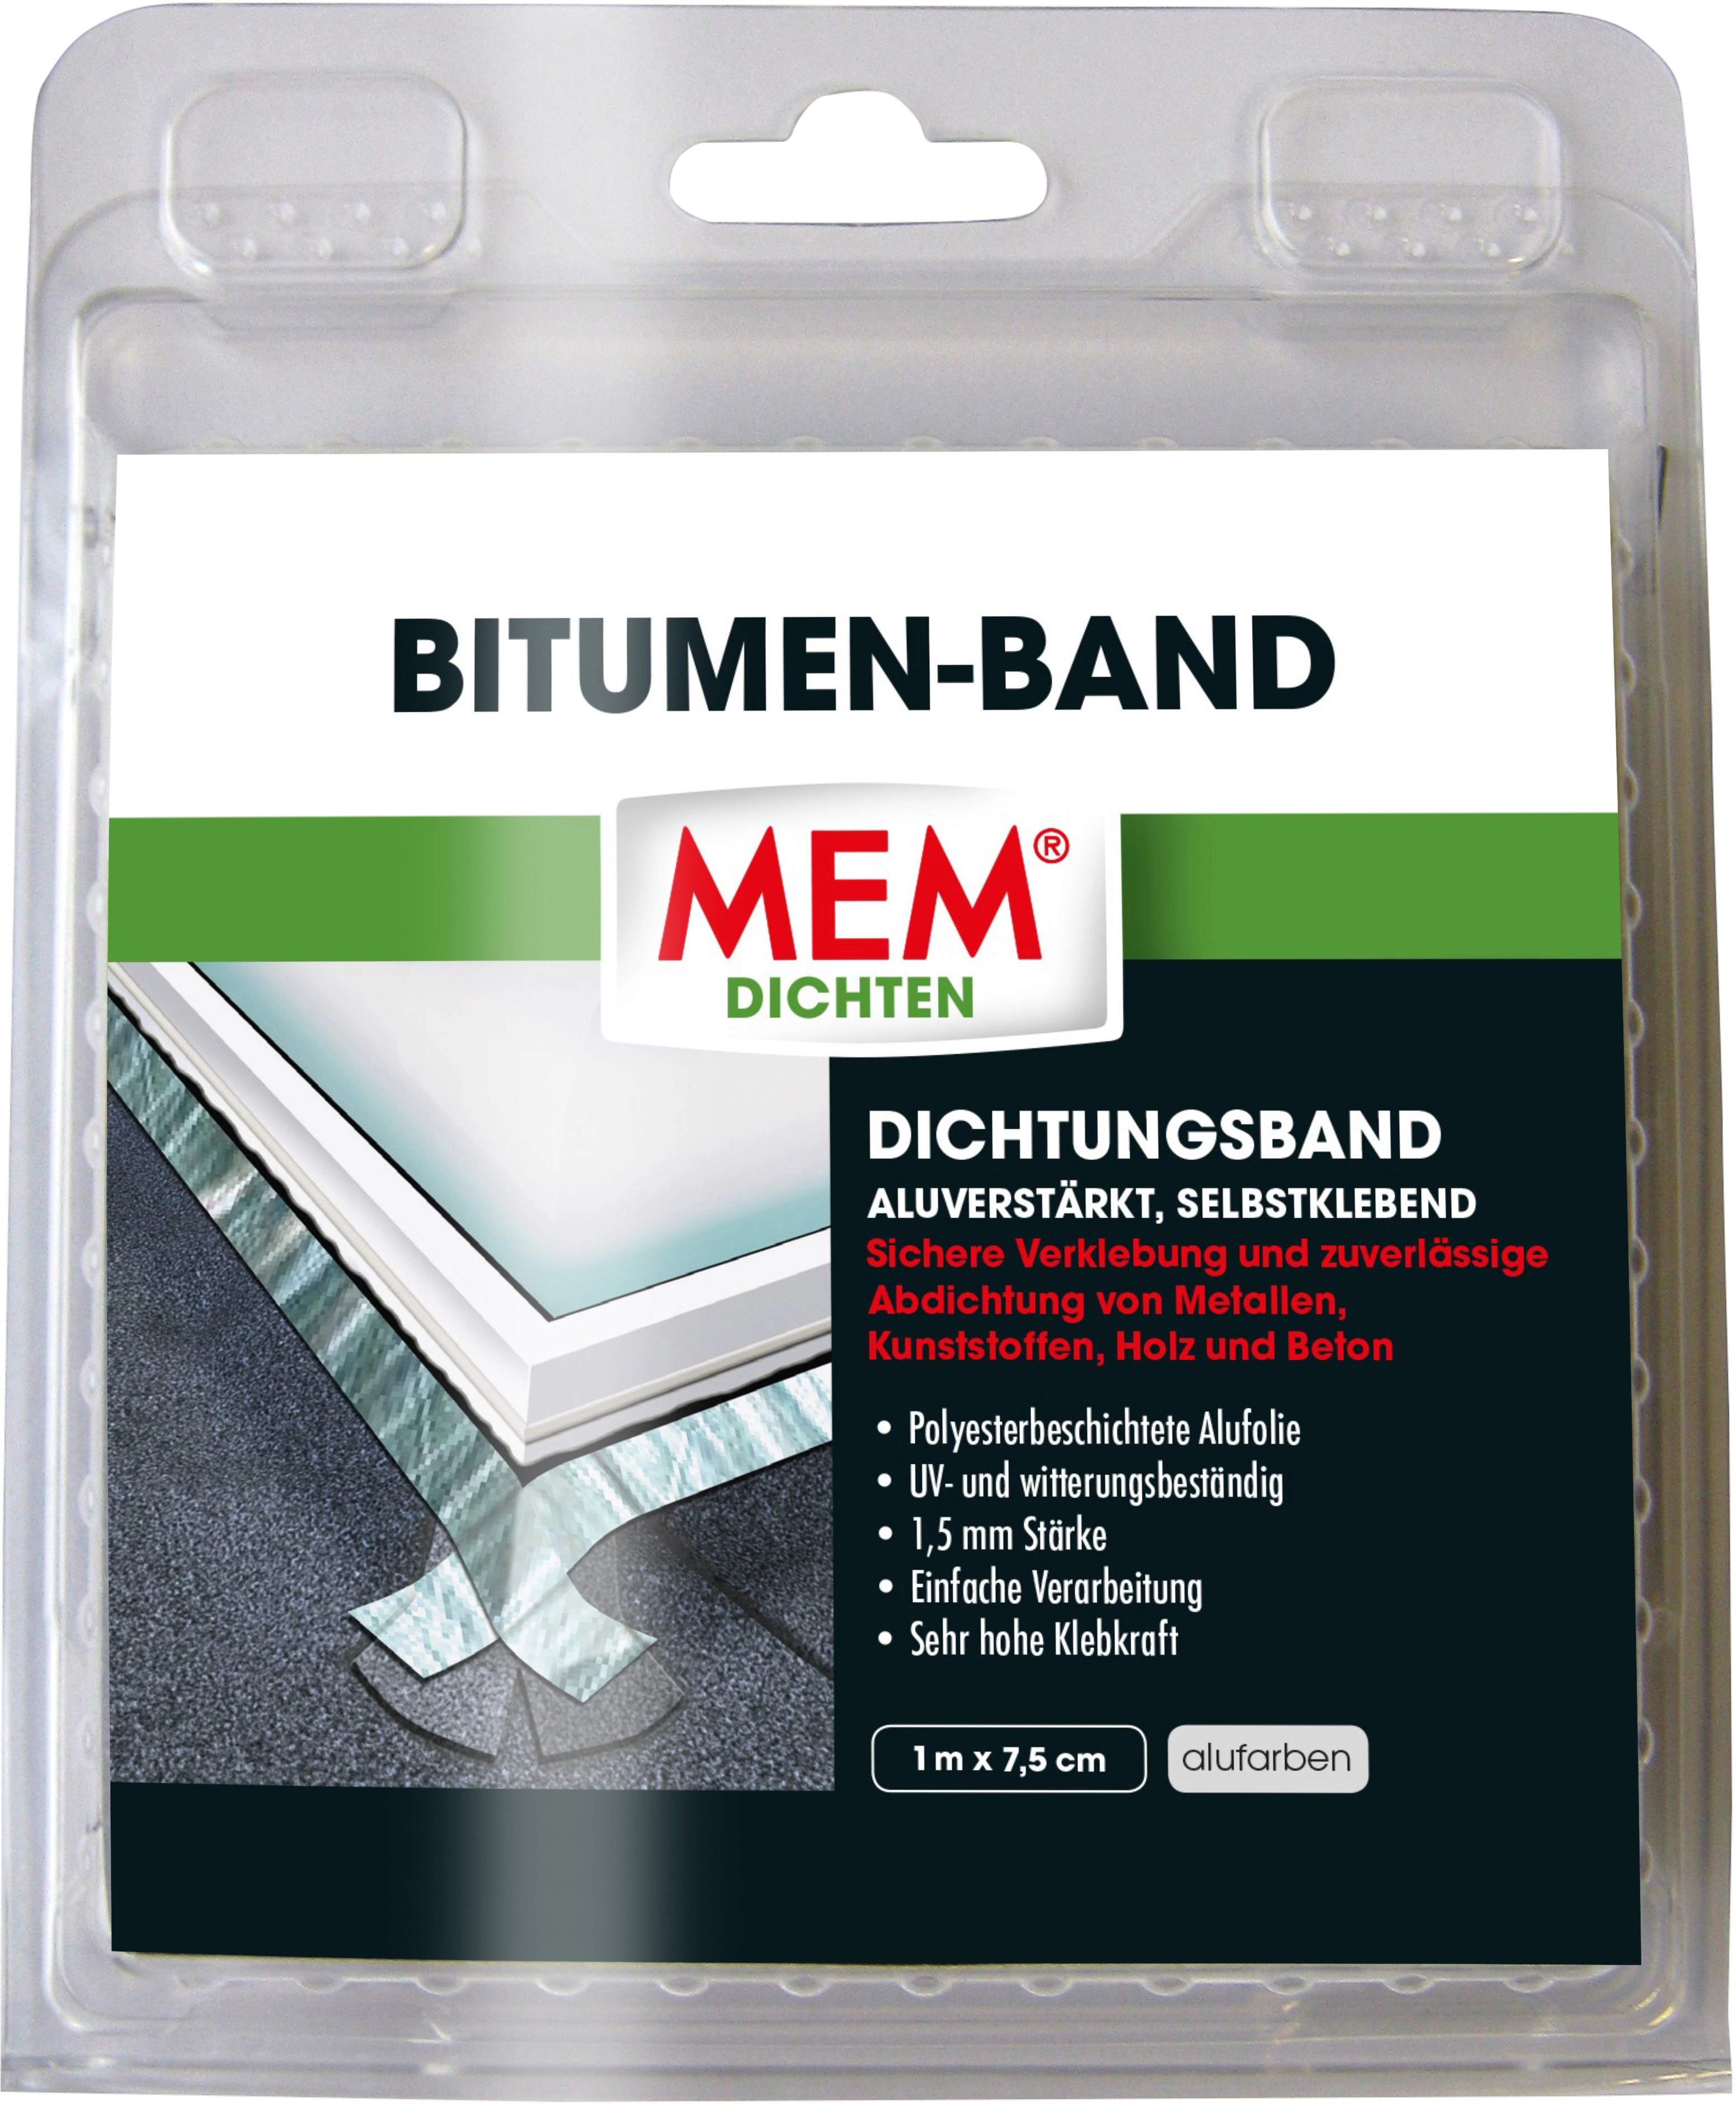 MEM Bitumen-Spray, Zur Abdichtung und für kleinere Reparaturen